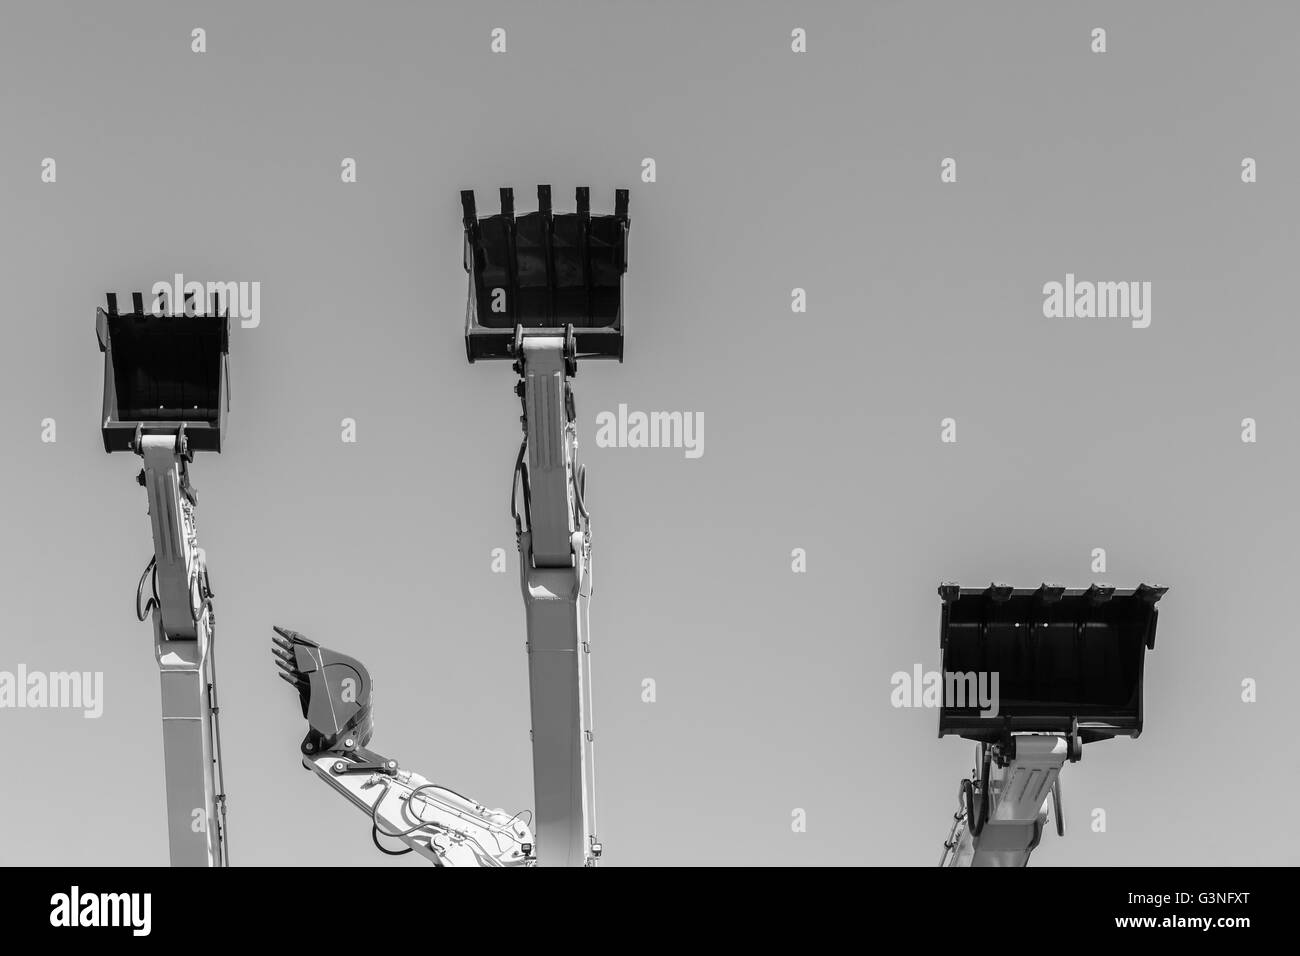 Lavori di movimento terra industriali acciaio escavatori benna macchine scomparti closeup foto astratte contro sky. Foto Stock